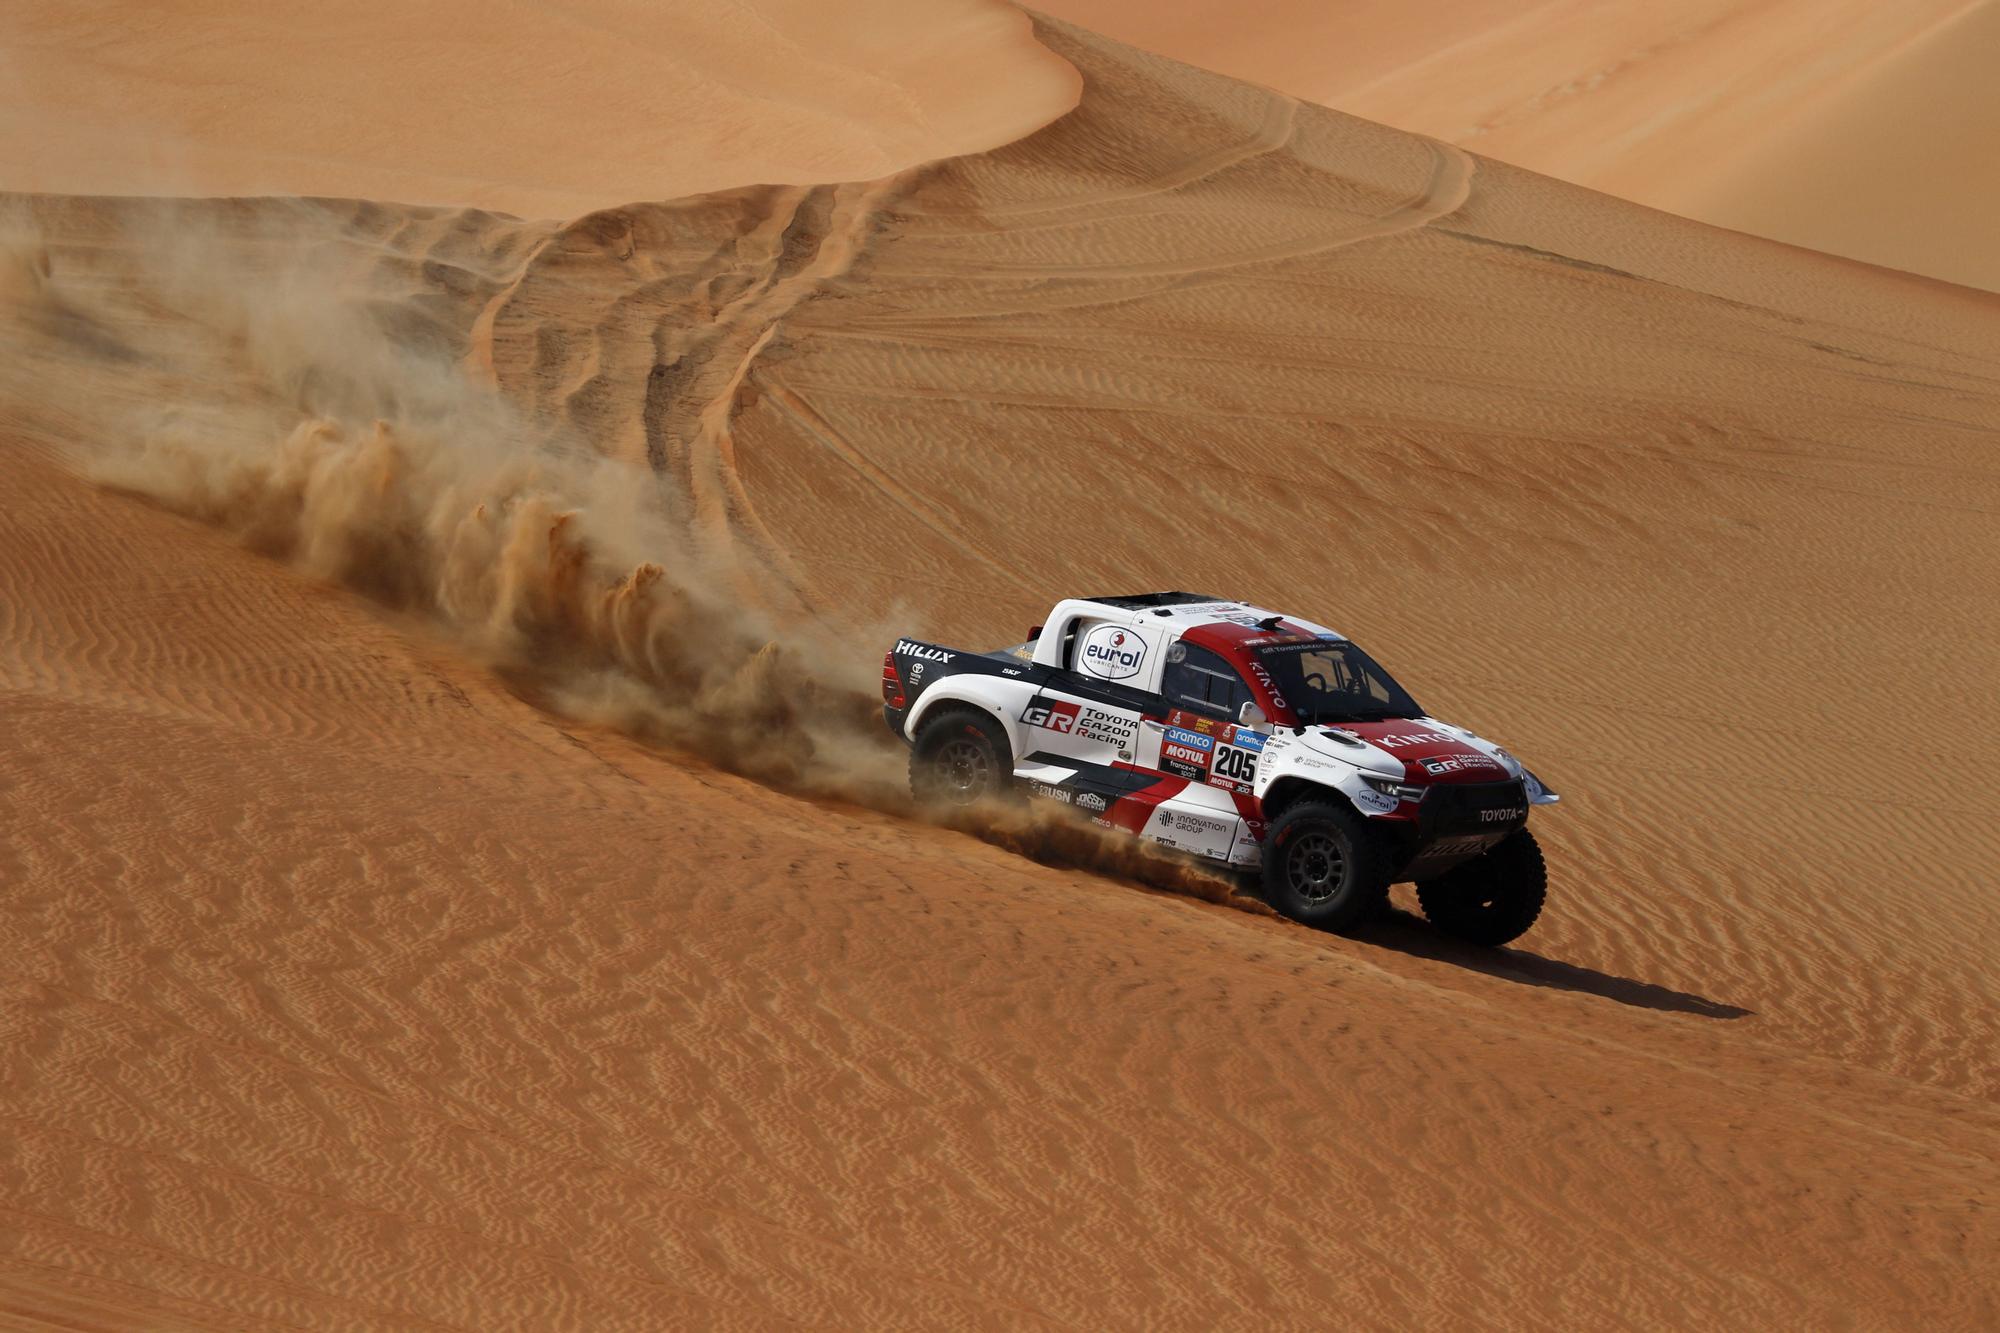 Dakar Rally (163440643).jpg